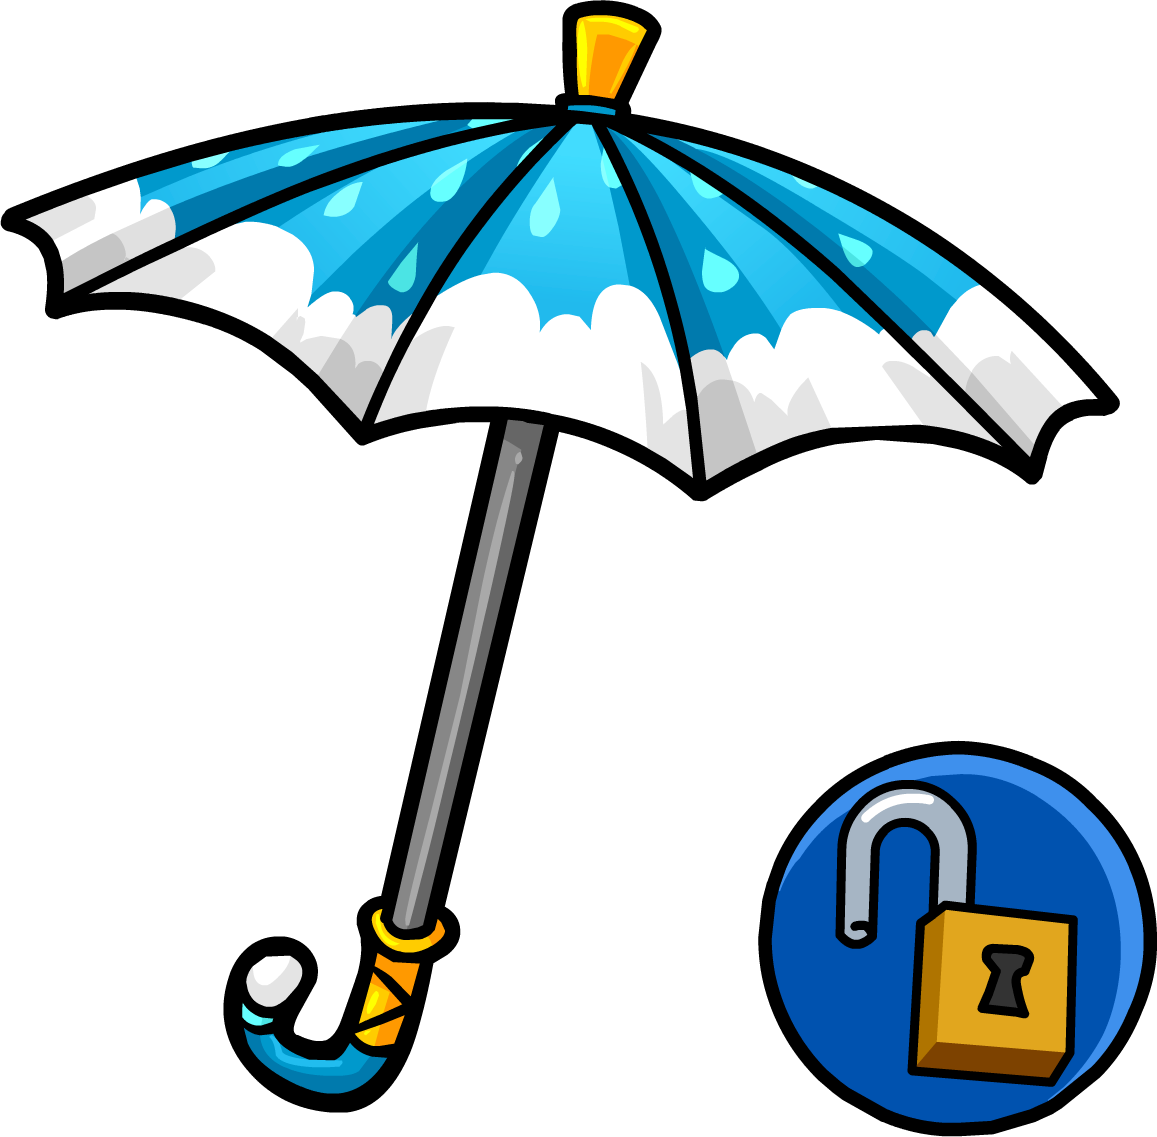 Cloudy Umbrella - Club Penguin Umbrella (1157x1137)